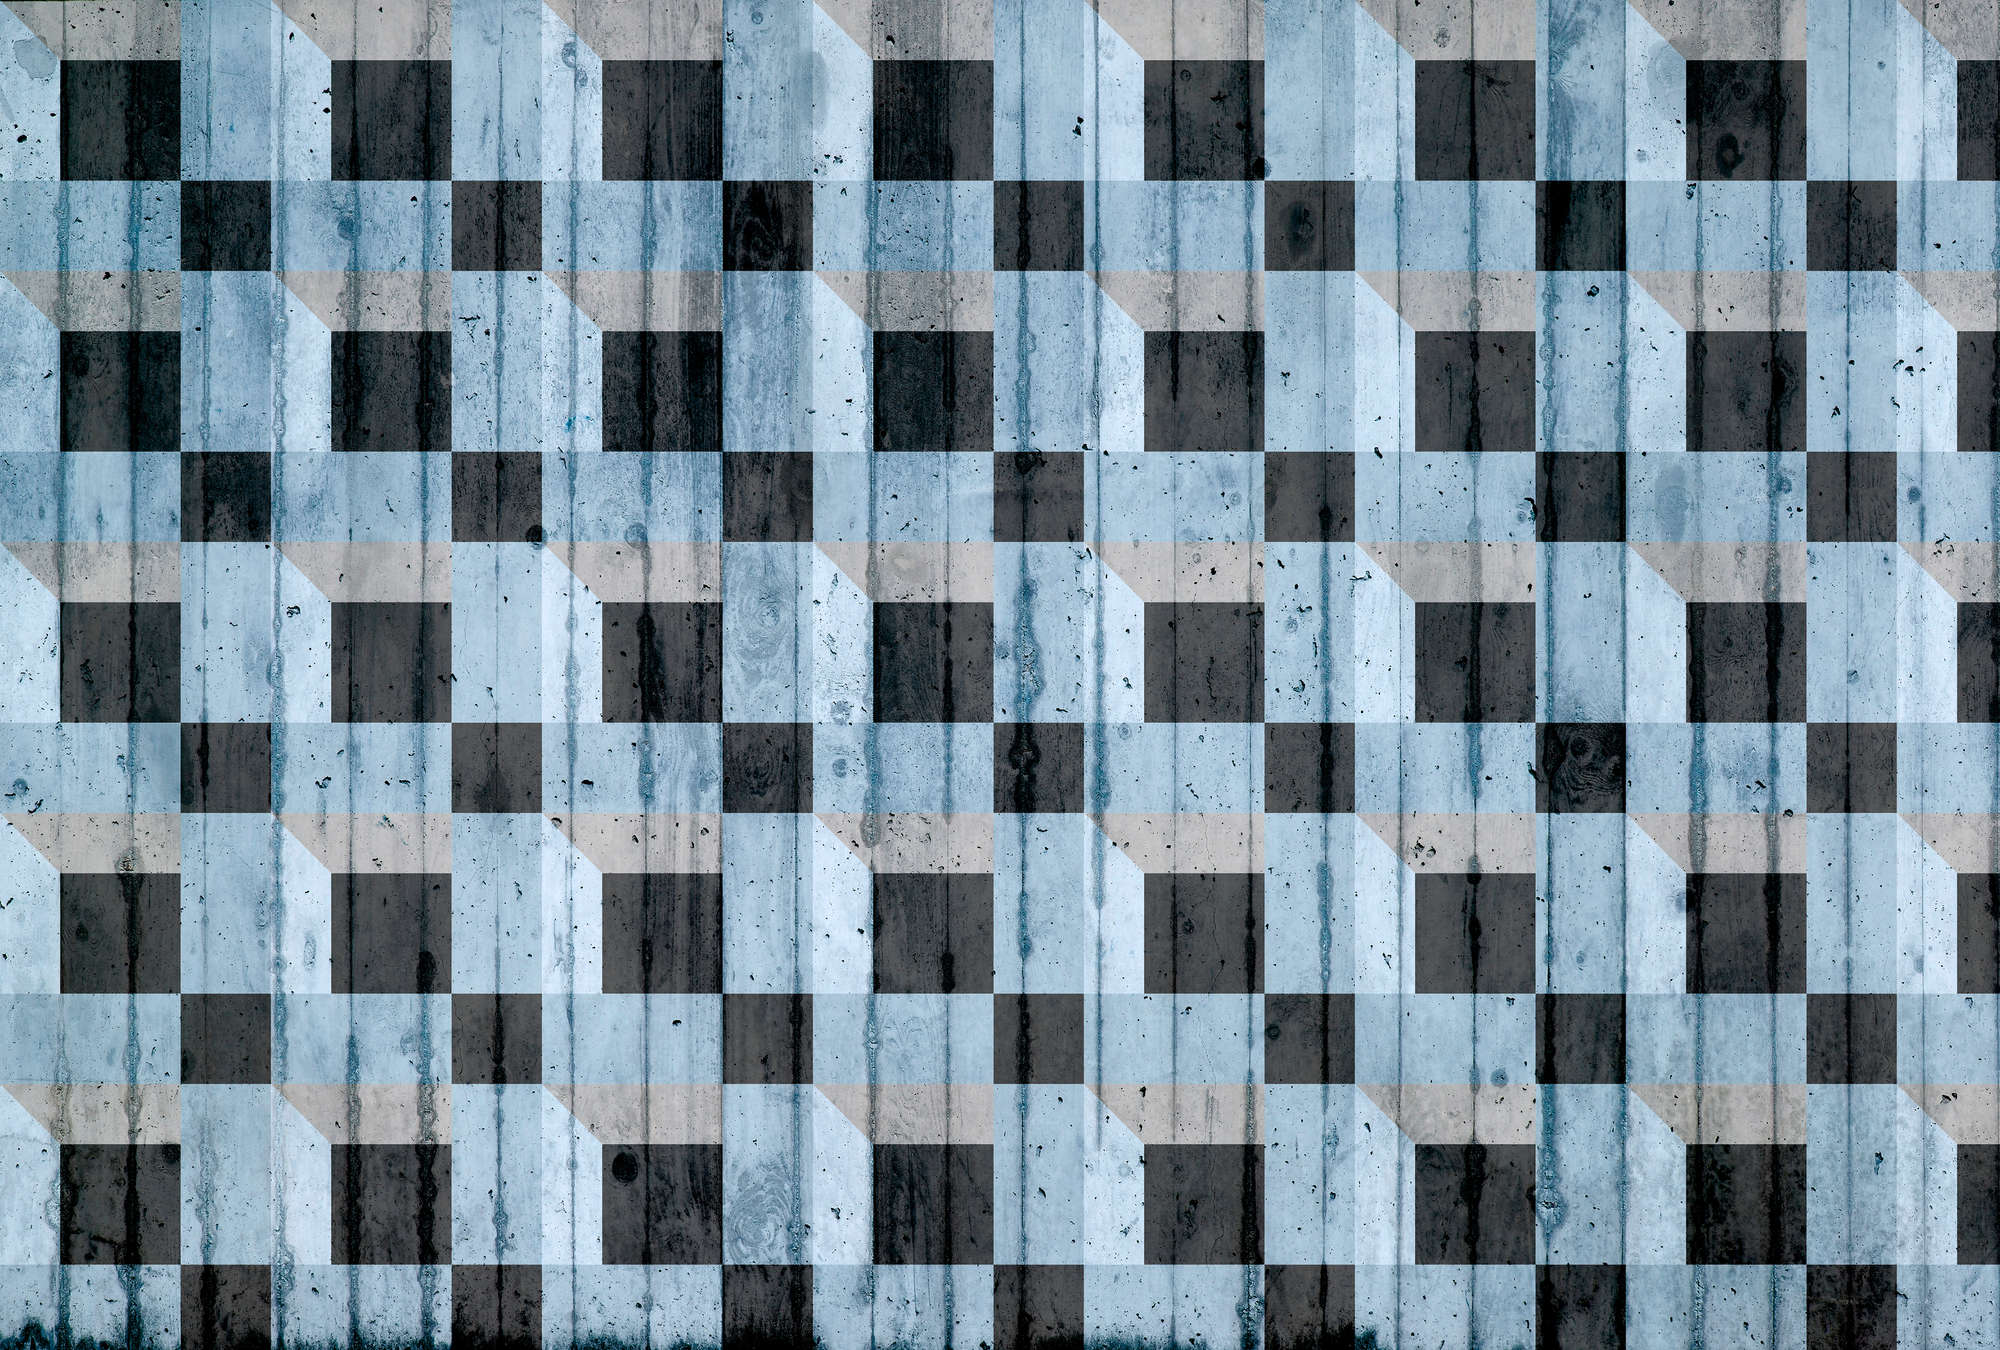             Betonlook behang met vierkant patroon - blauw, zwart, grijs
        